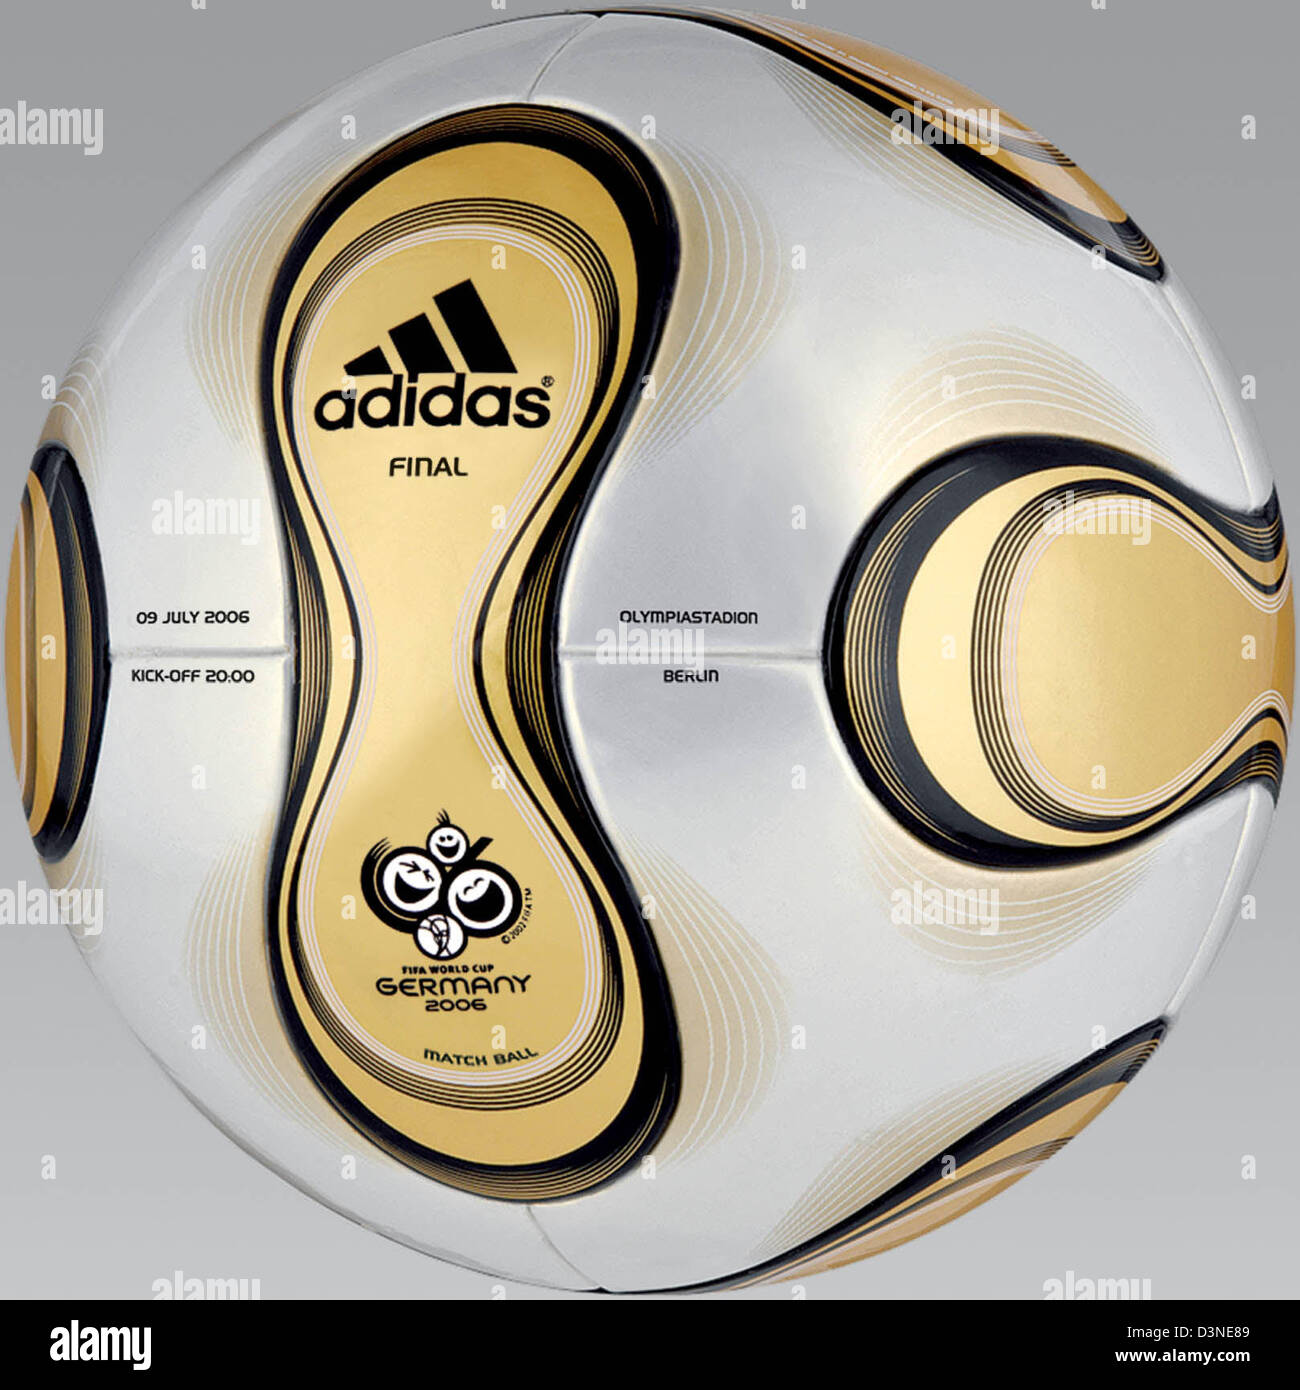 La imagen muestra el fútbol dorado desarrollado especialmente para el final  de la próxima Copa del Mundo, Berlín, Alemania, el martes 18 de abril de  2006. La pelota lleva el nombre "Teamgeist